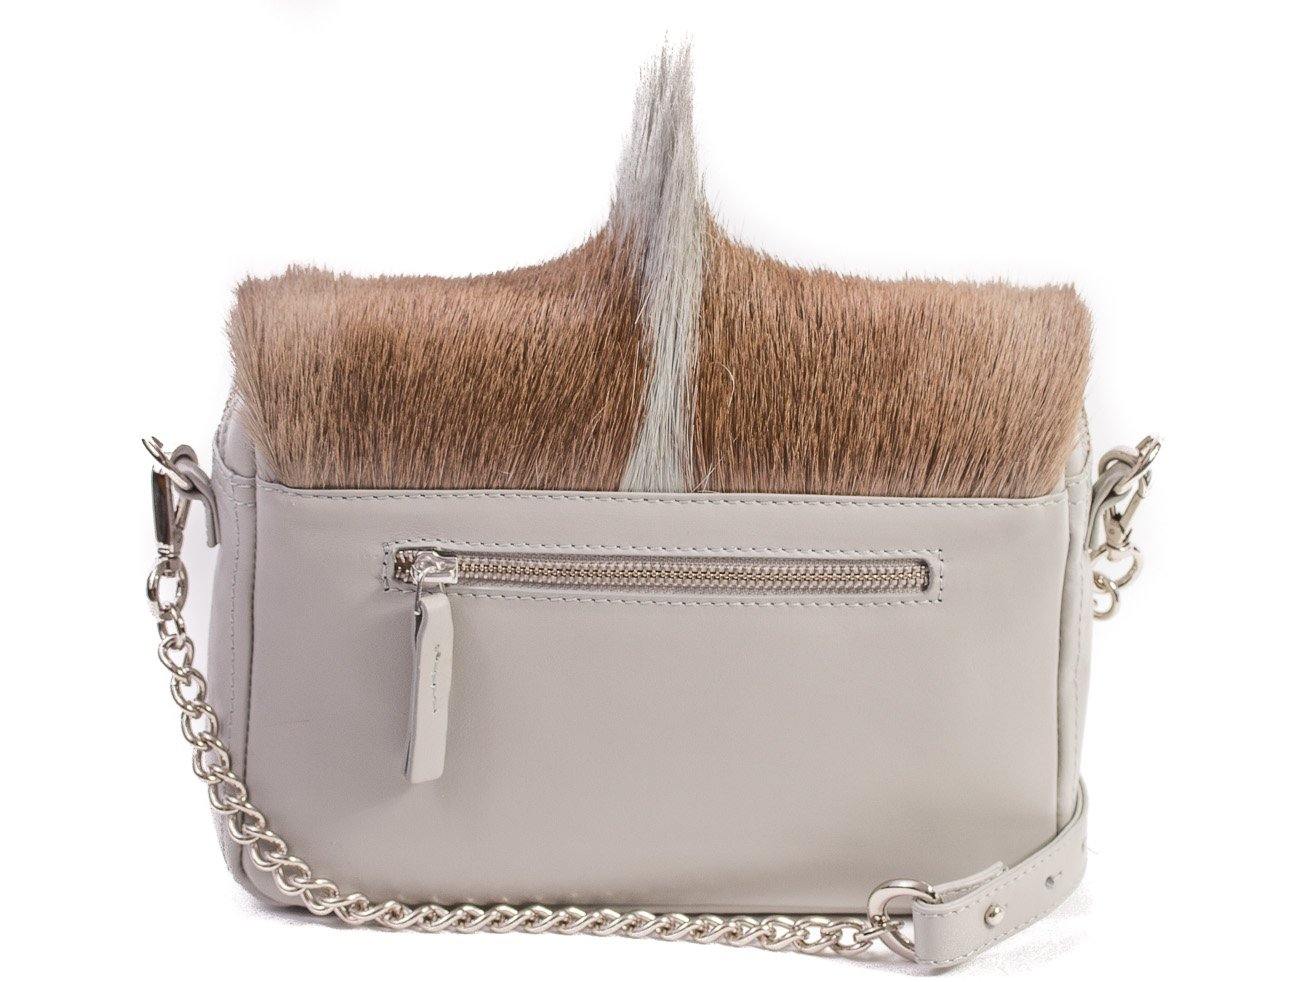 sherene melinda springbok hair-on-hide earth leather shoulder bag Fan back-strap